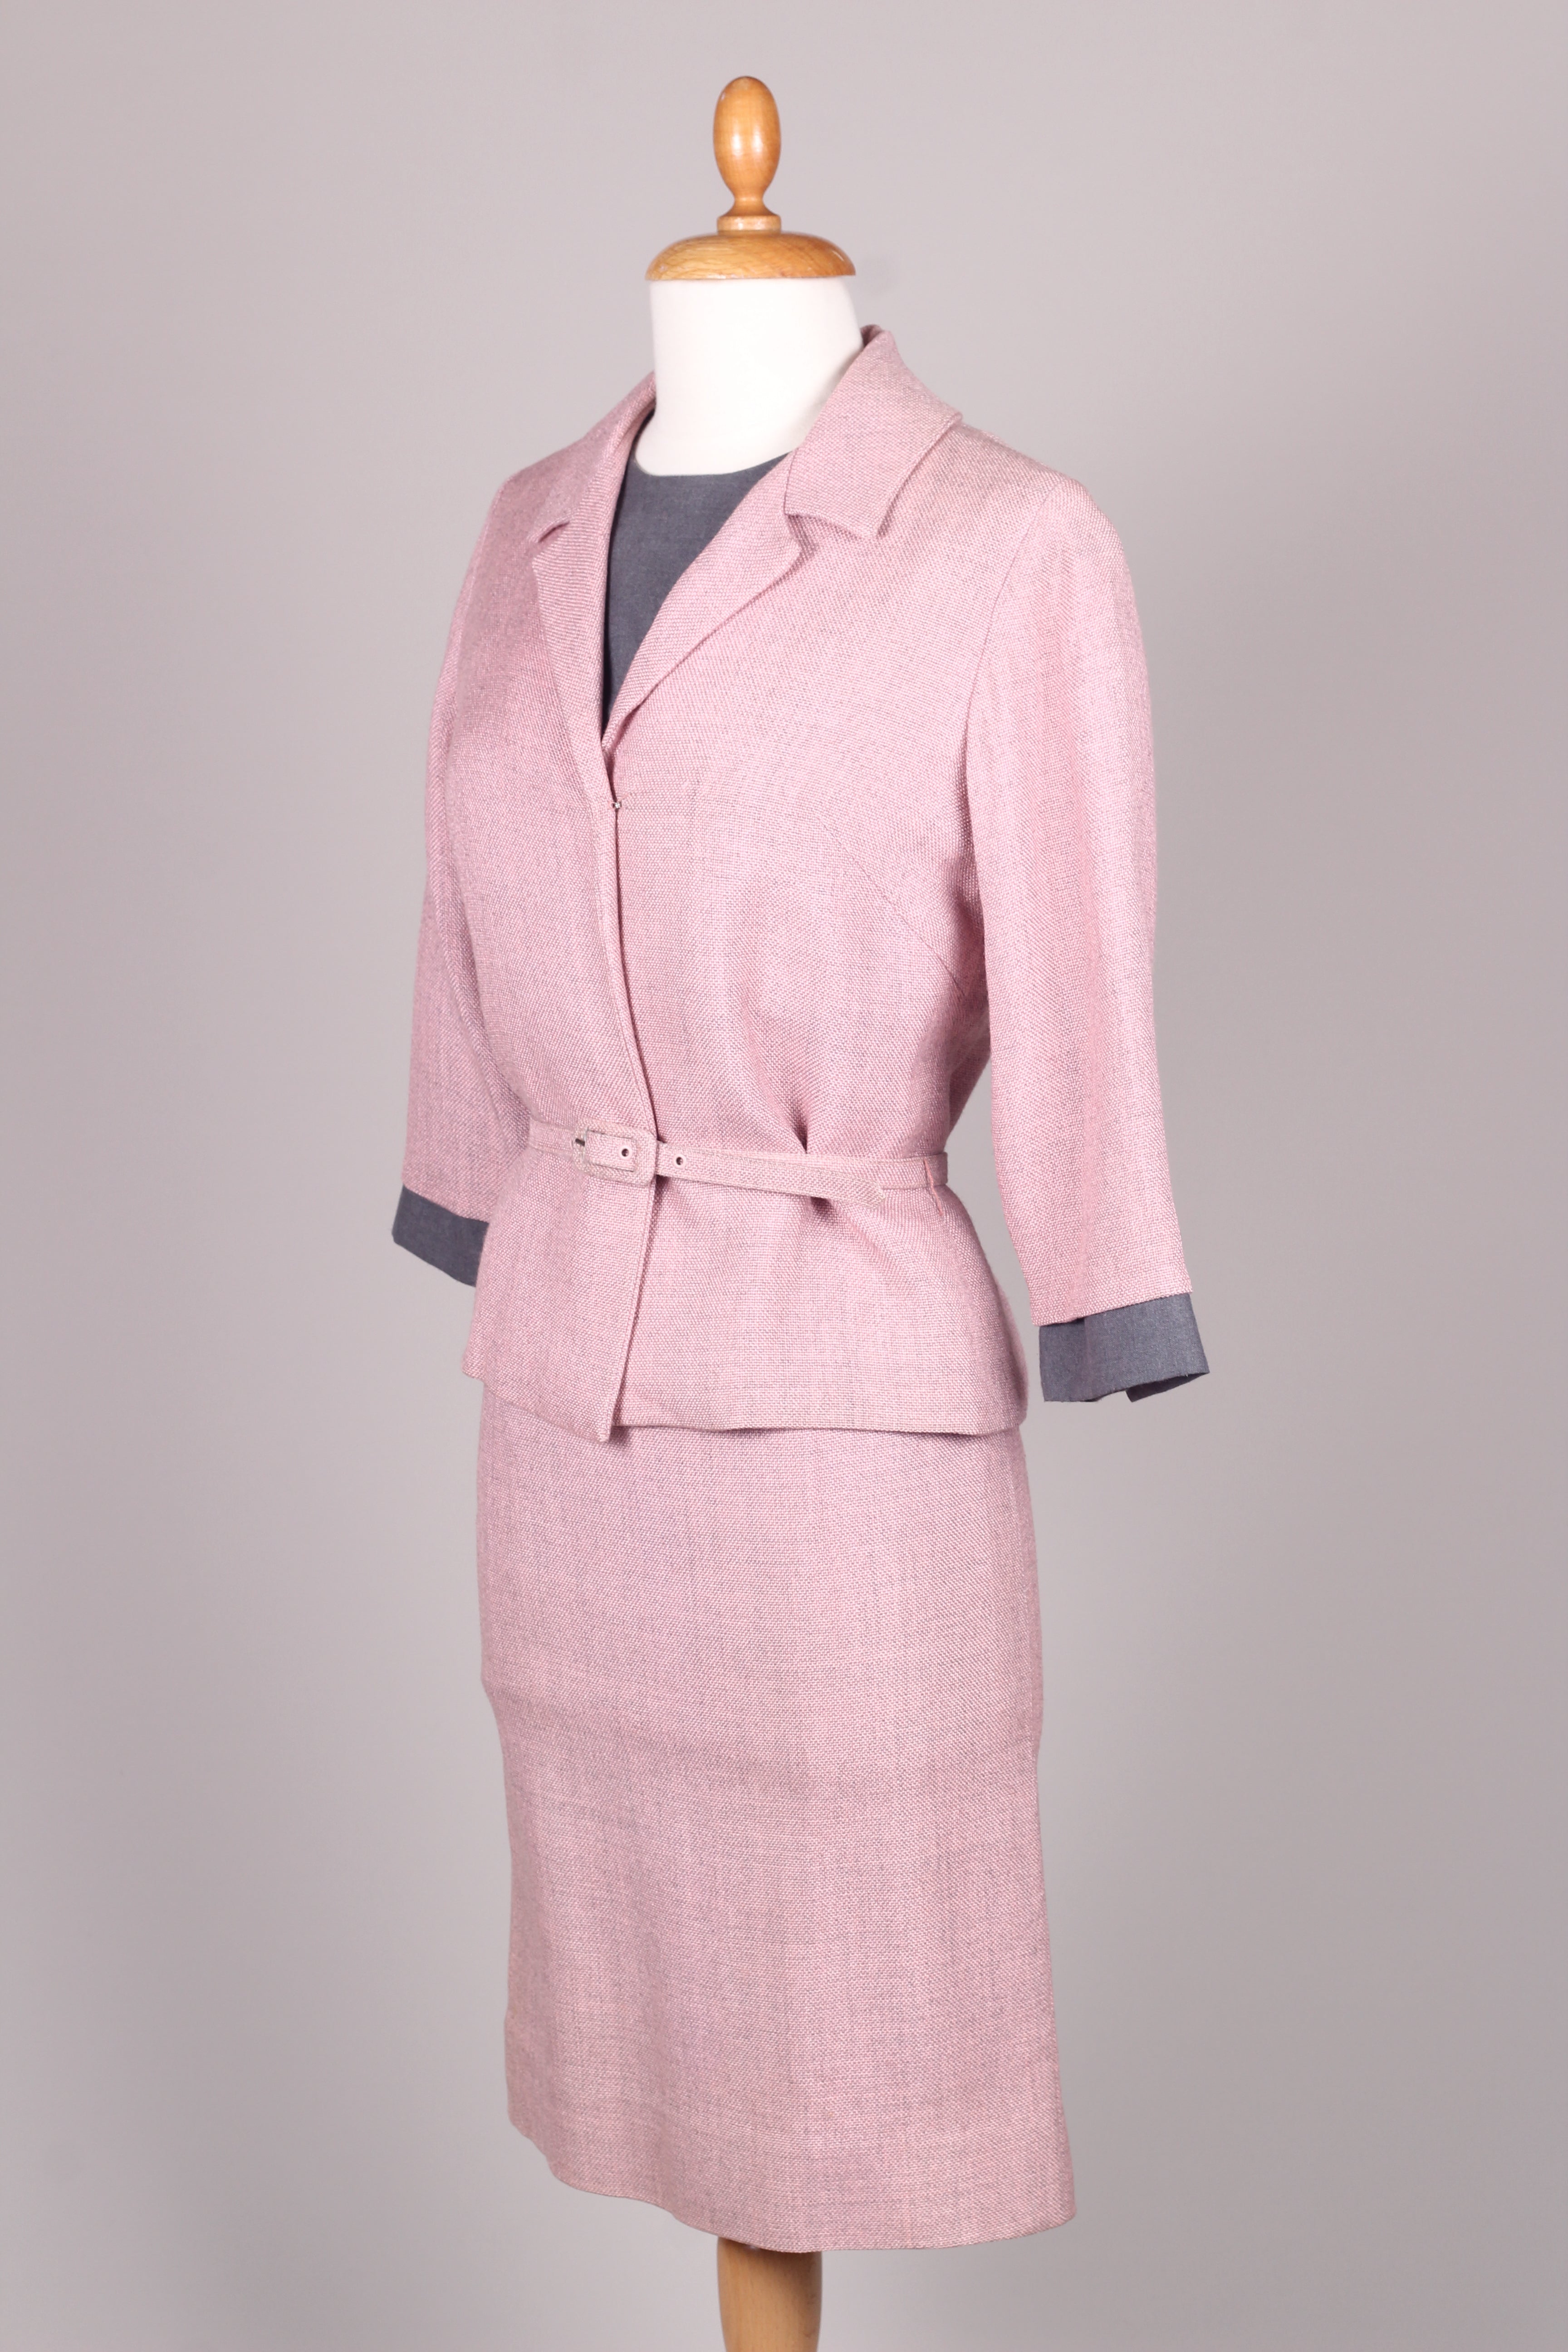 Rosa og grå kjole med jakke og bælte. 1960. Xs